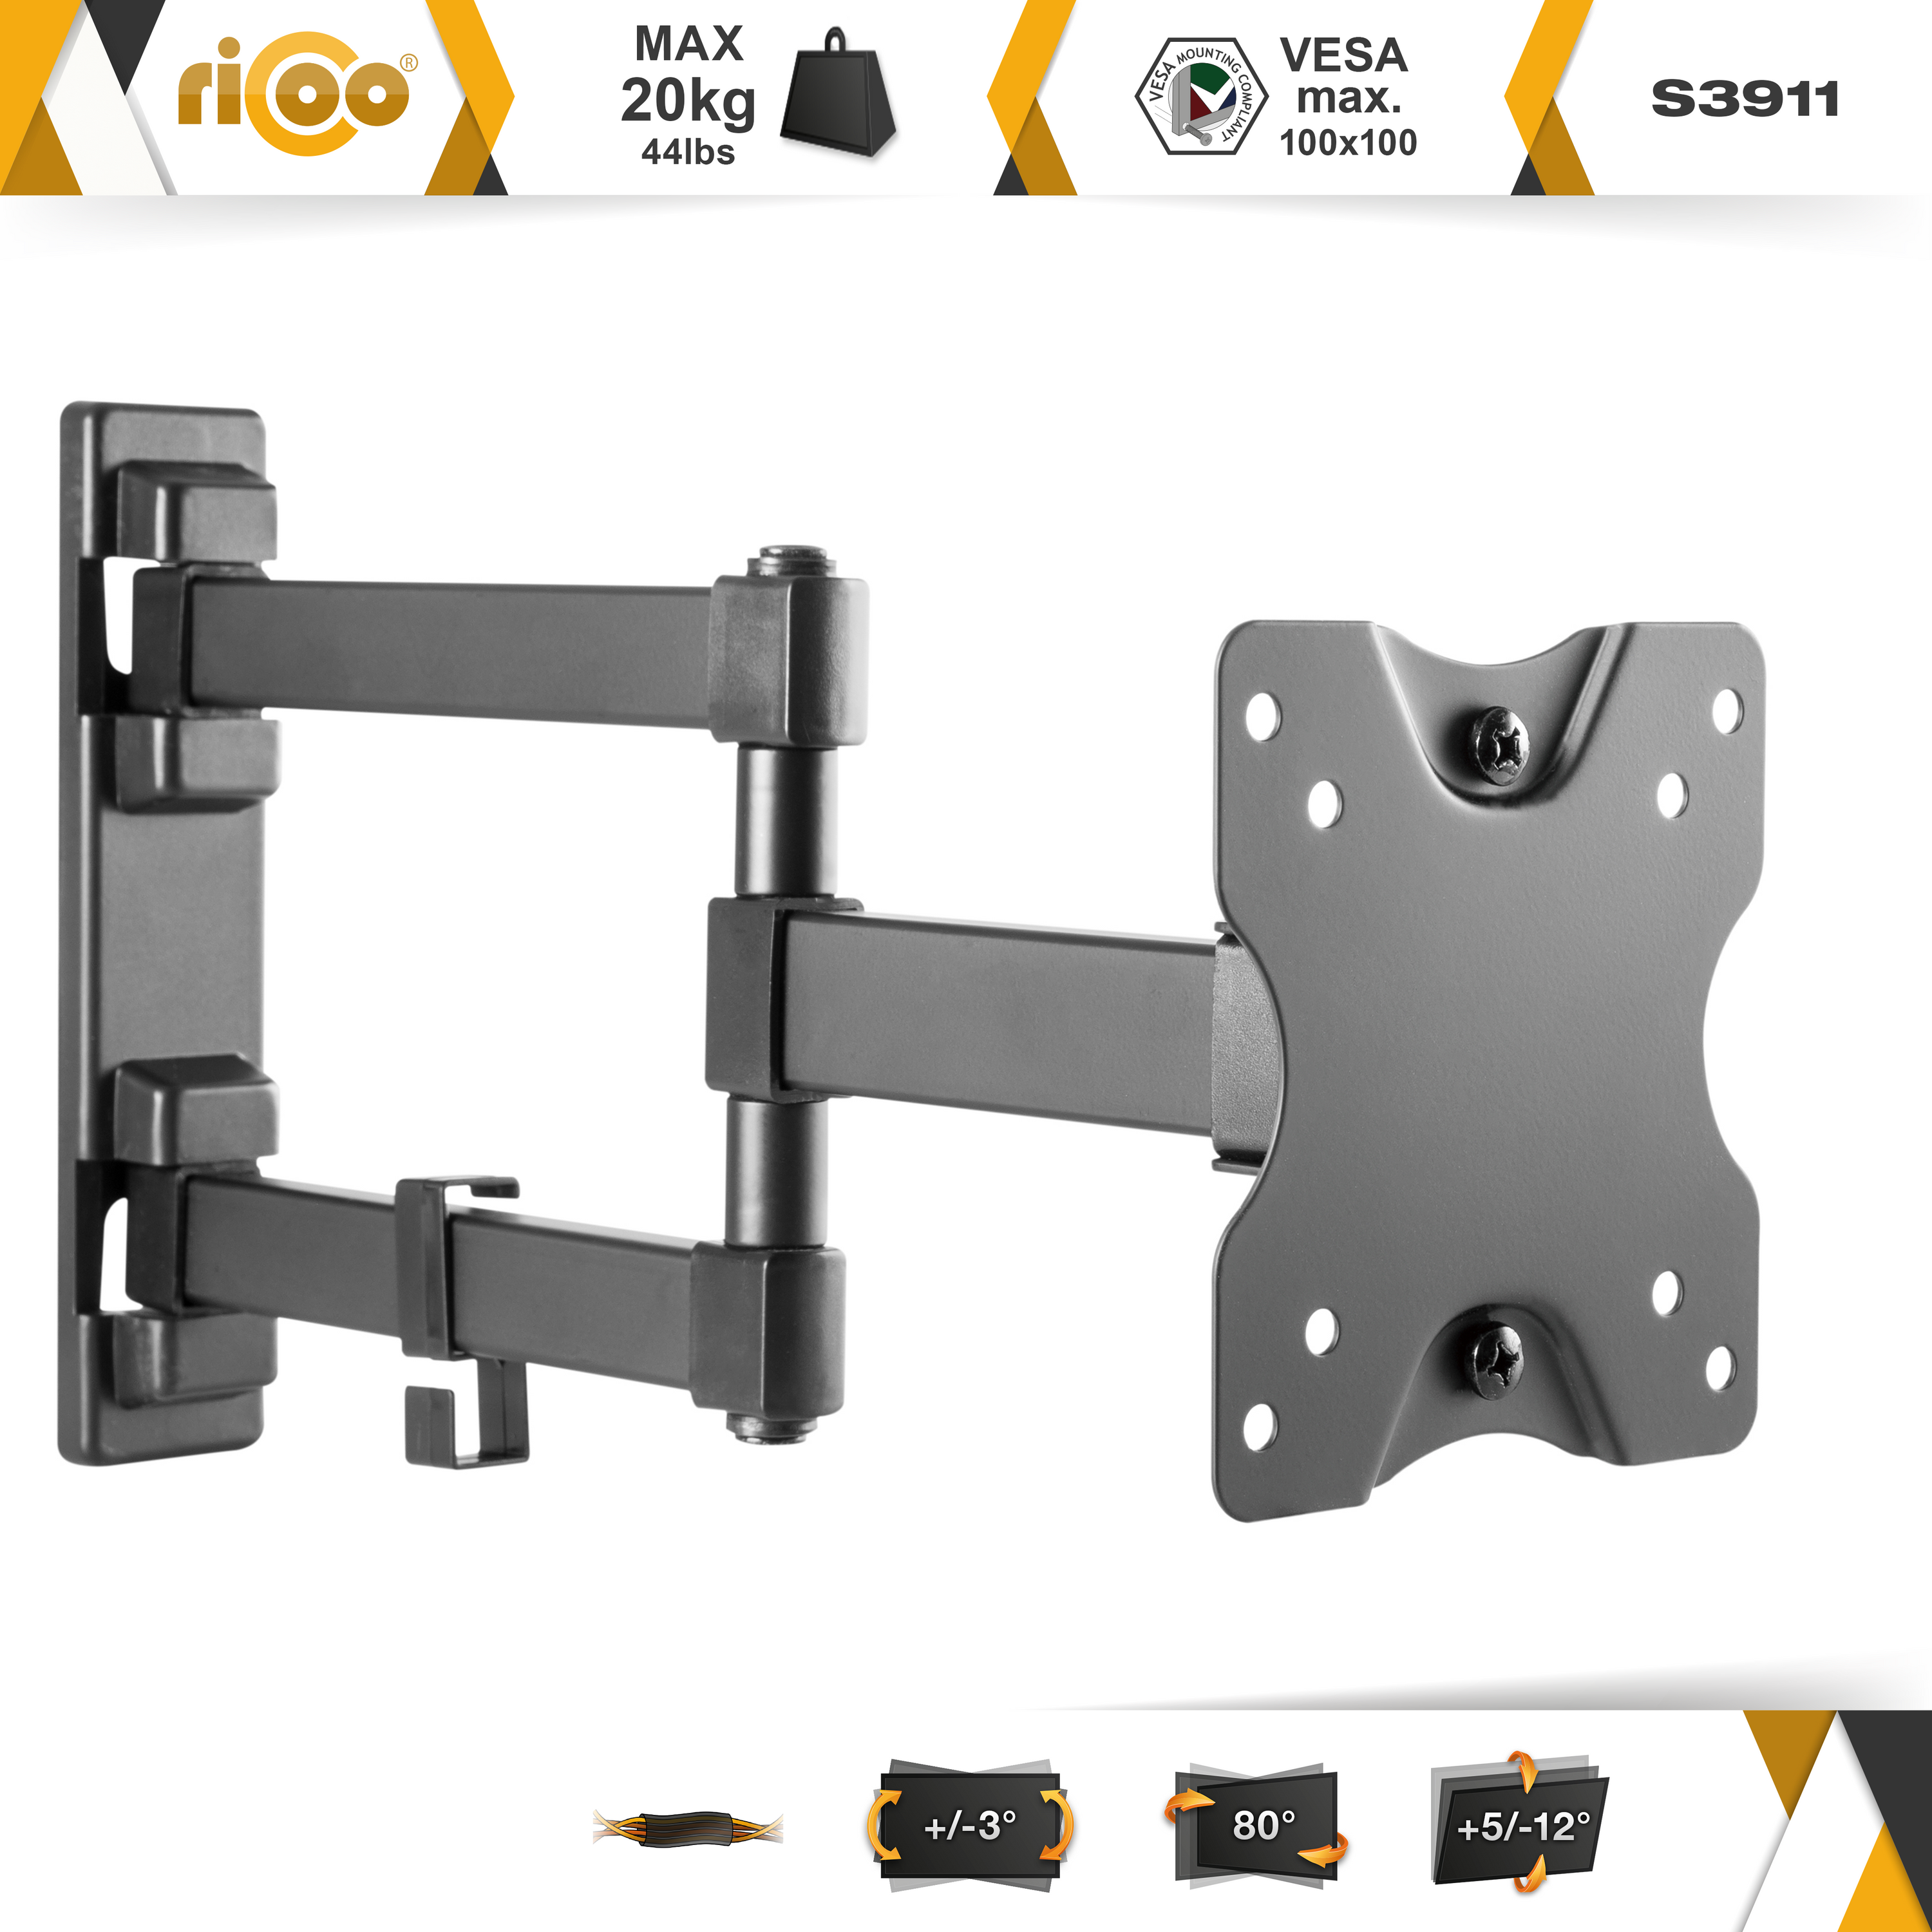 RICOO S3911 schwenkbar neigbar Monitor curved 100 TV Wandhalterung, Wand VESA bis ausziehbar Halterung x 100 Schwarz universal